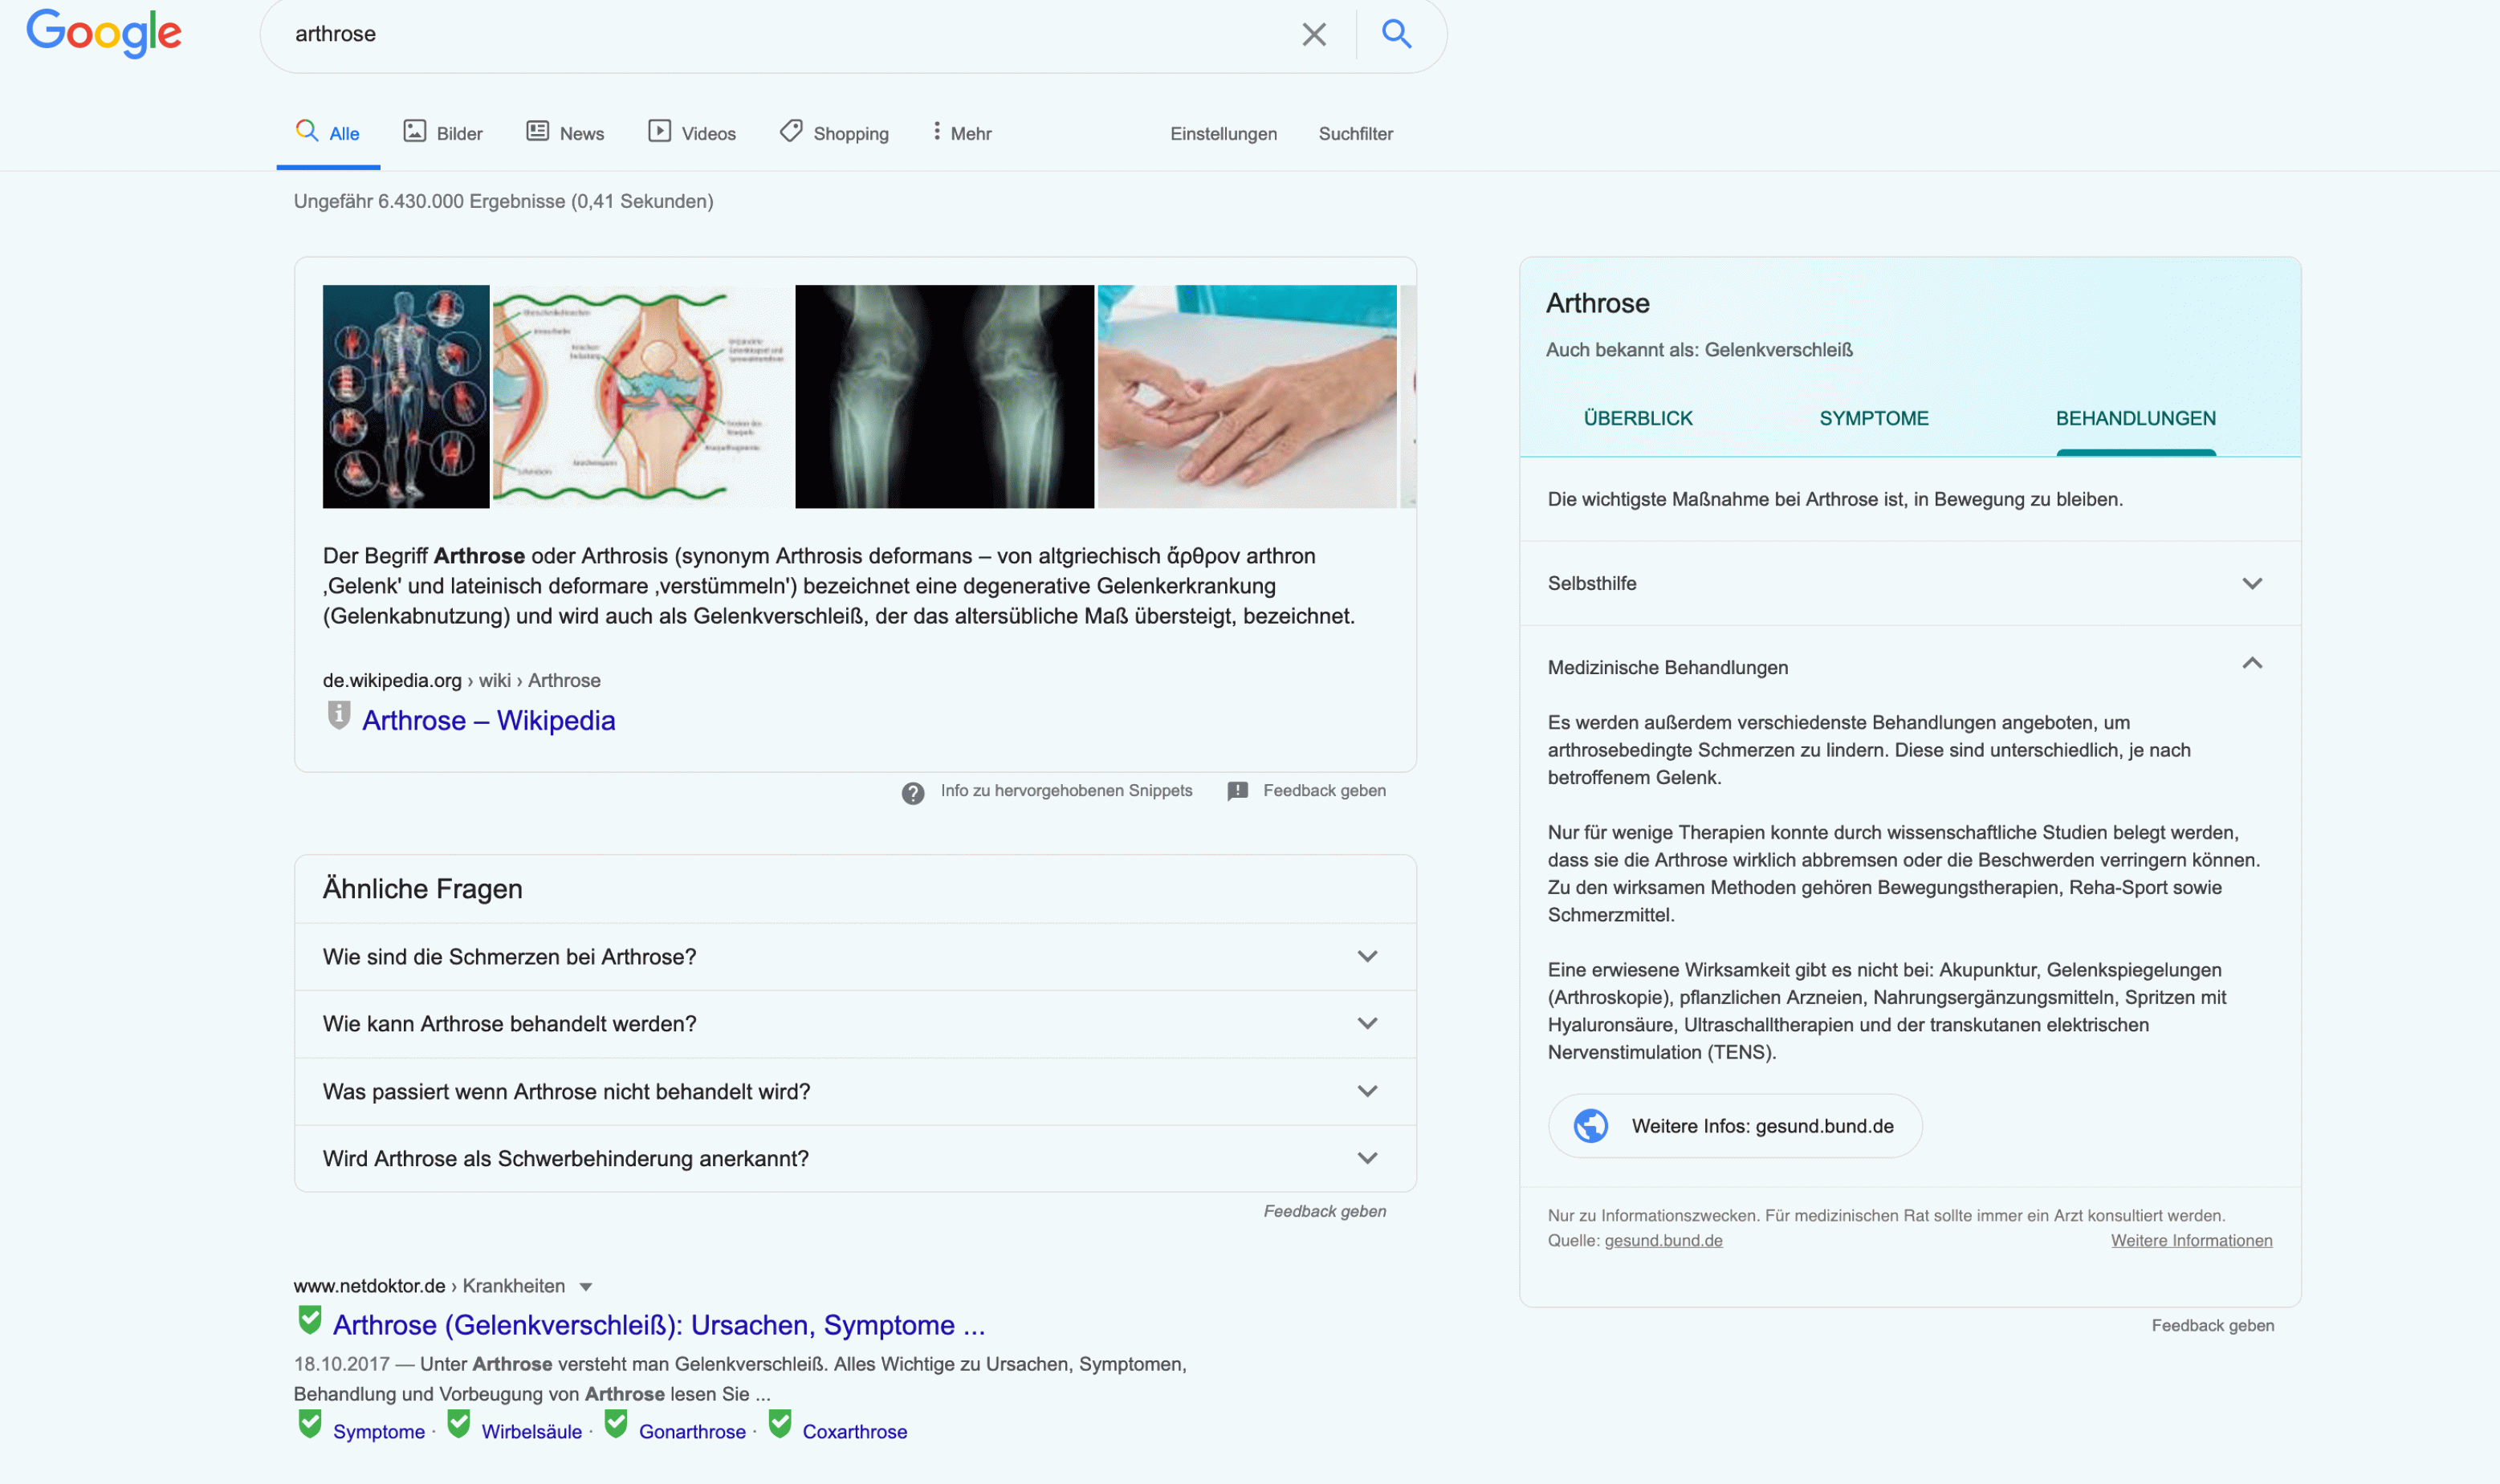 Ein Knowledge Panel wird oben rechts am Bildschirm angezeigt. Ein Screenshot zeigt das Knowledge Panel der Krankheit Arthrose